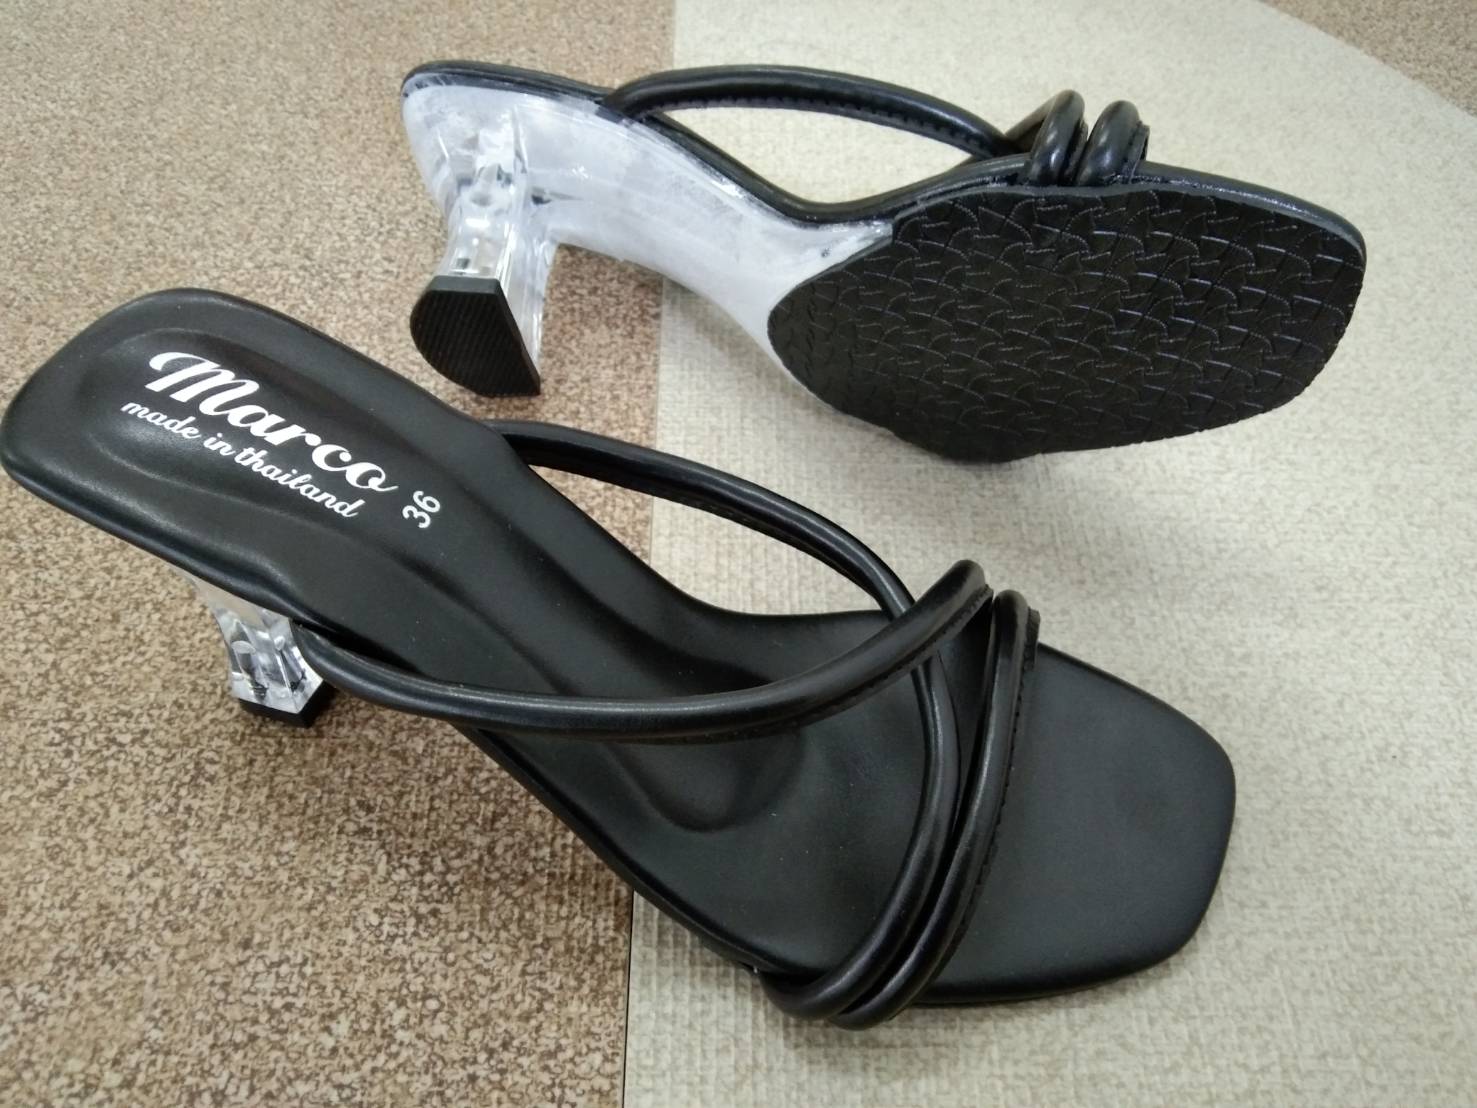 Marco รุ่น B1013 รองเท้าส้นแก้วผู้หญิง รองเท้าส้นสูง ส้นแก้ว สไตล์วินเทจ แนวใหม่ แบบขายดี พร้อมเสิร์ฟ